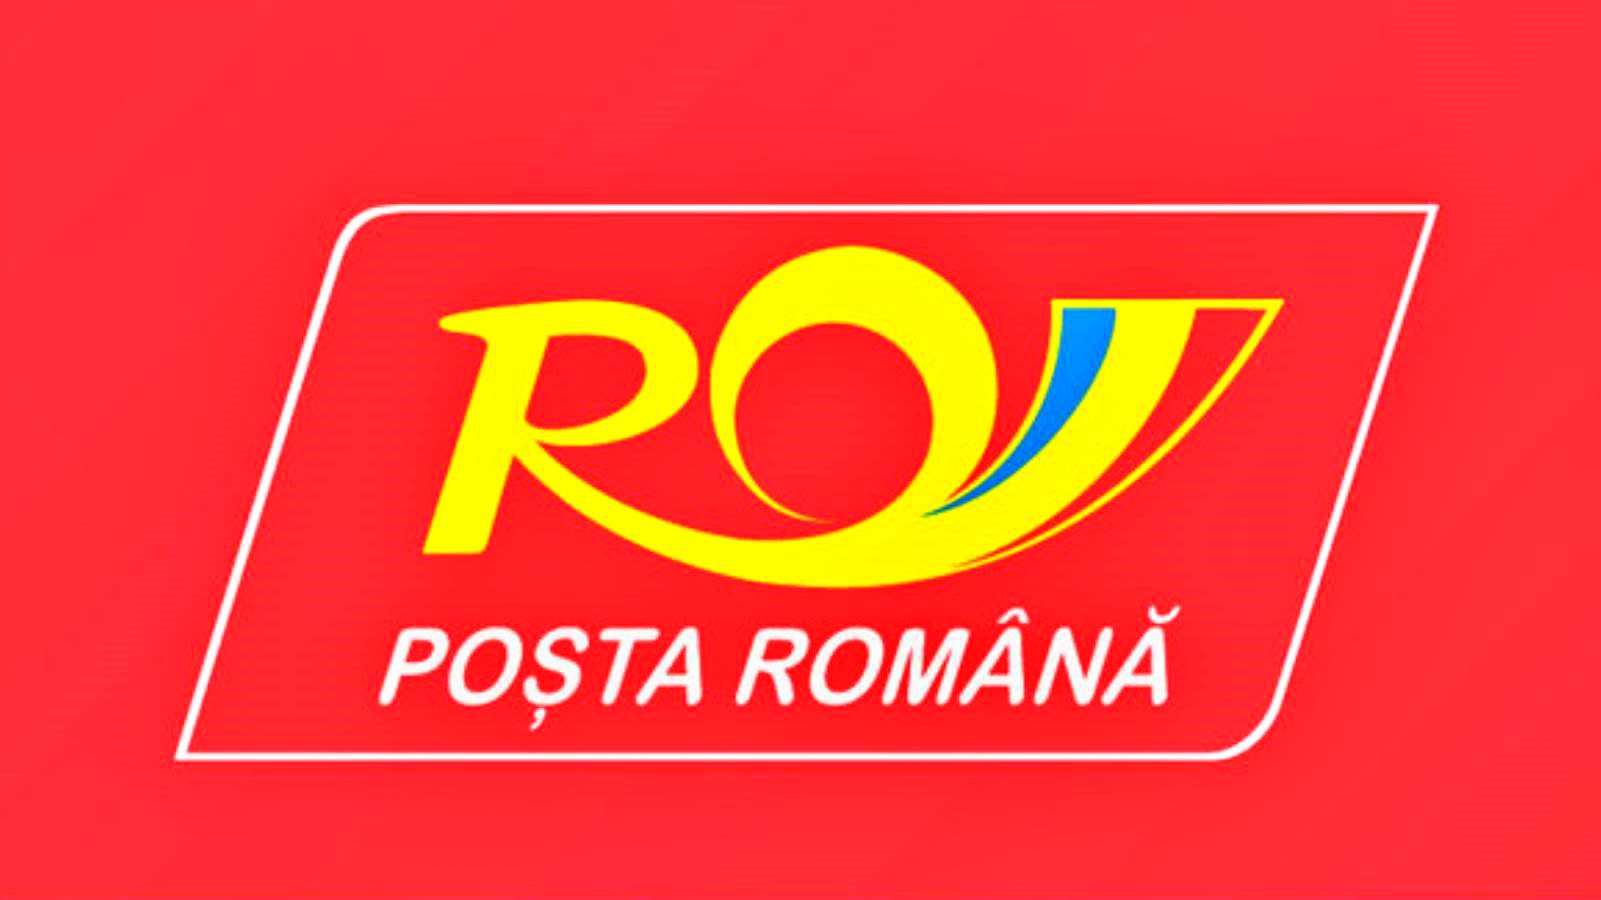 Romanian Post Il messaggio di interesse rivolto a tutti i rumeni